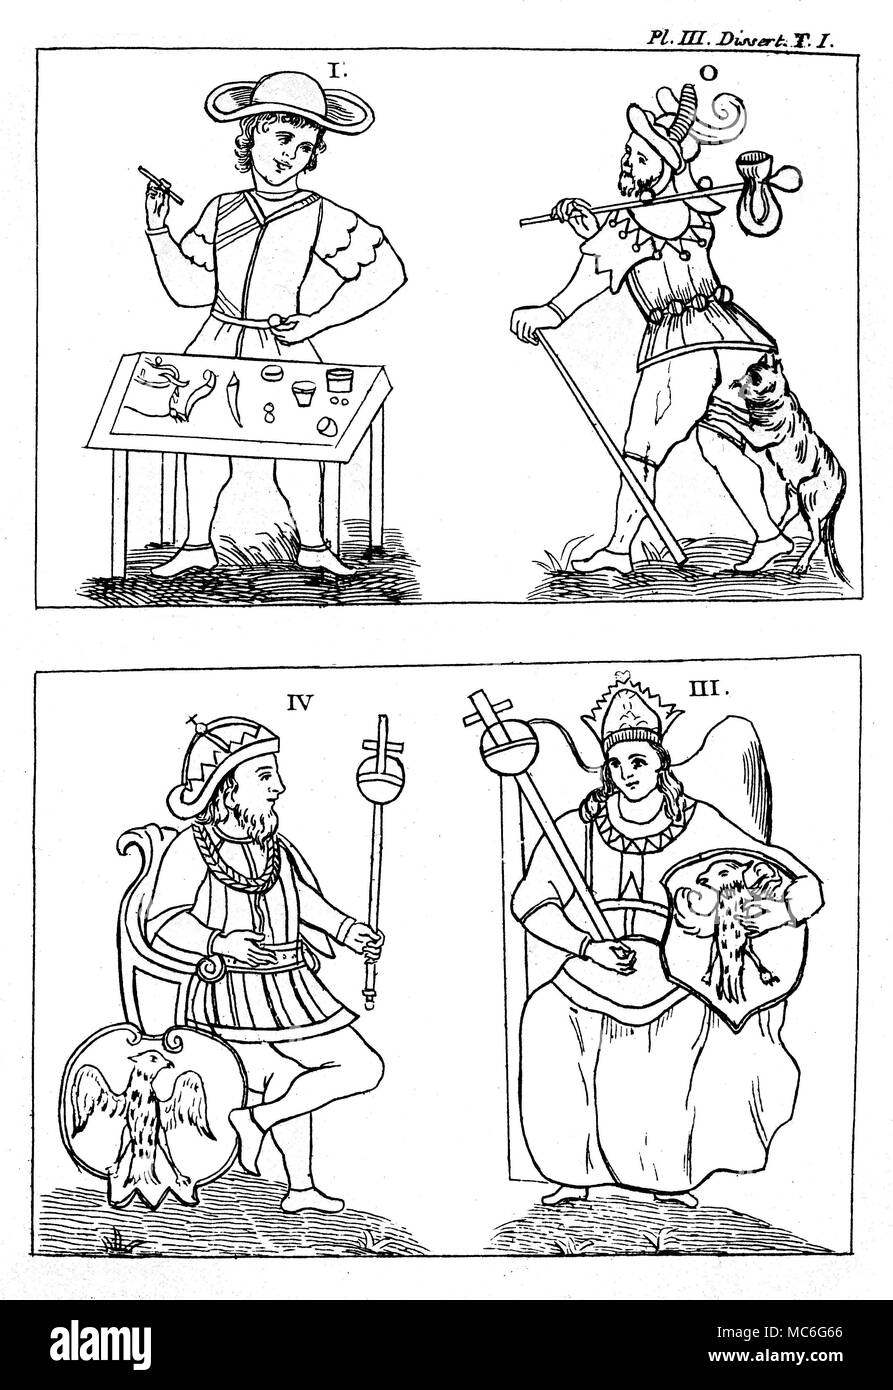 Cartas del Tarot - Diseño - GEBELIN MALABARISTA - engañar - Emperador,  EMPERATRIZ [Parte superior izquierda] El malabarista, tarjeta 1 del  conjunto representado por el francés Mason, Court de Gebelin, en 1773,